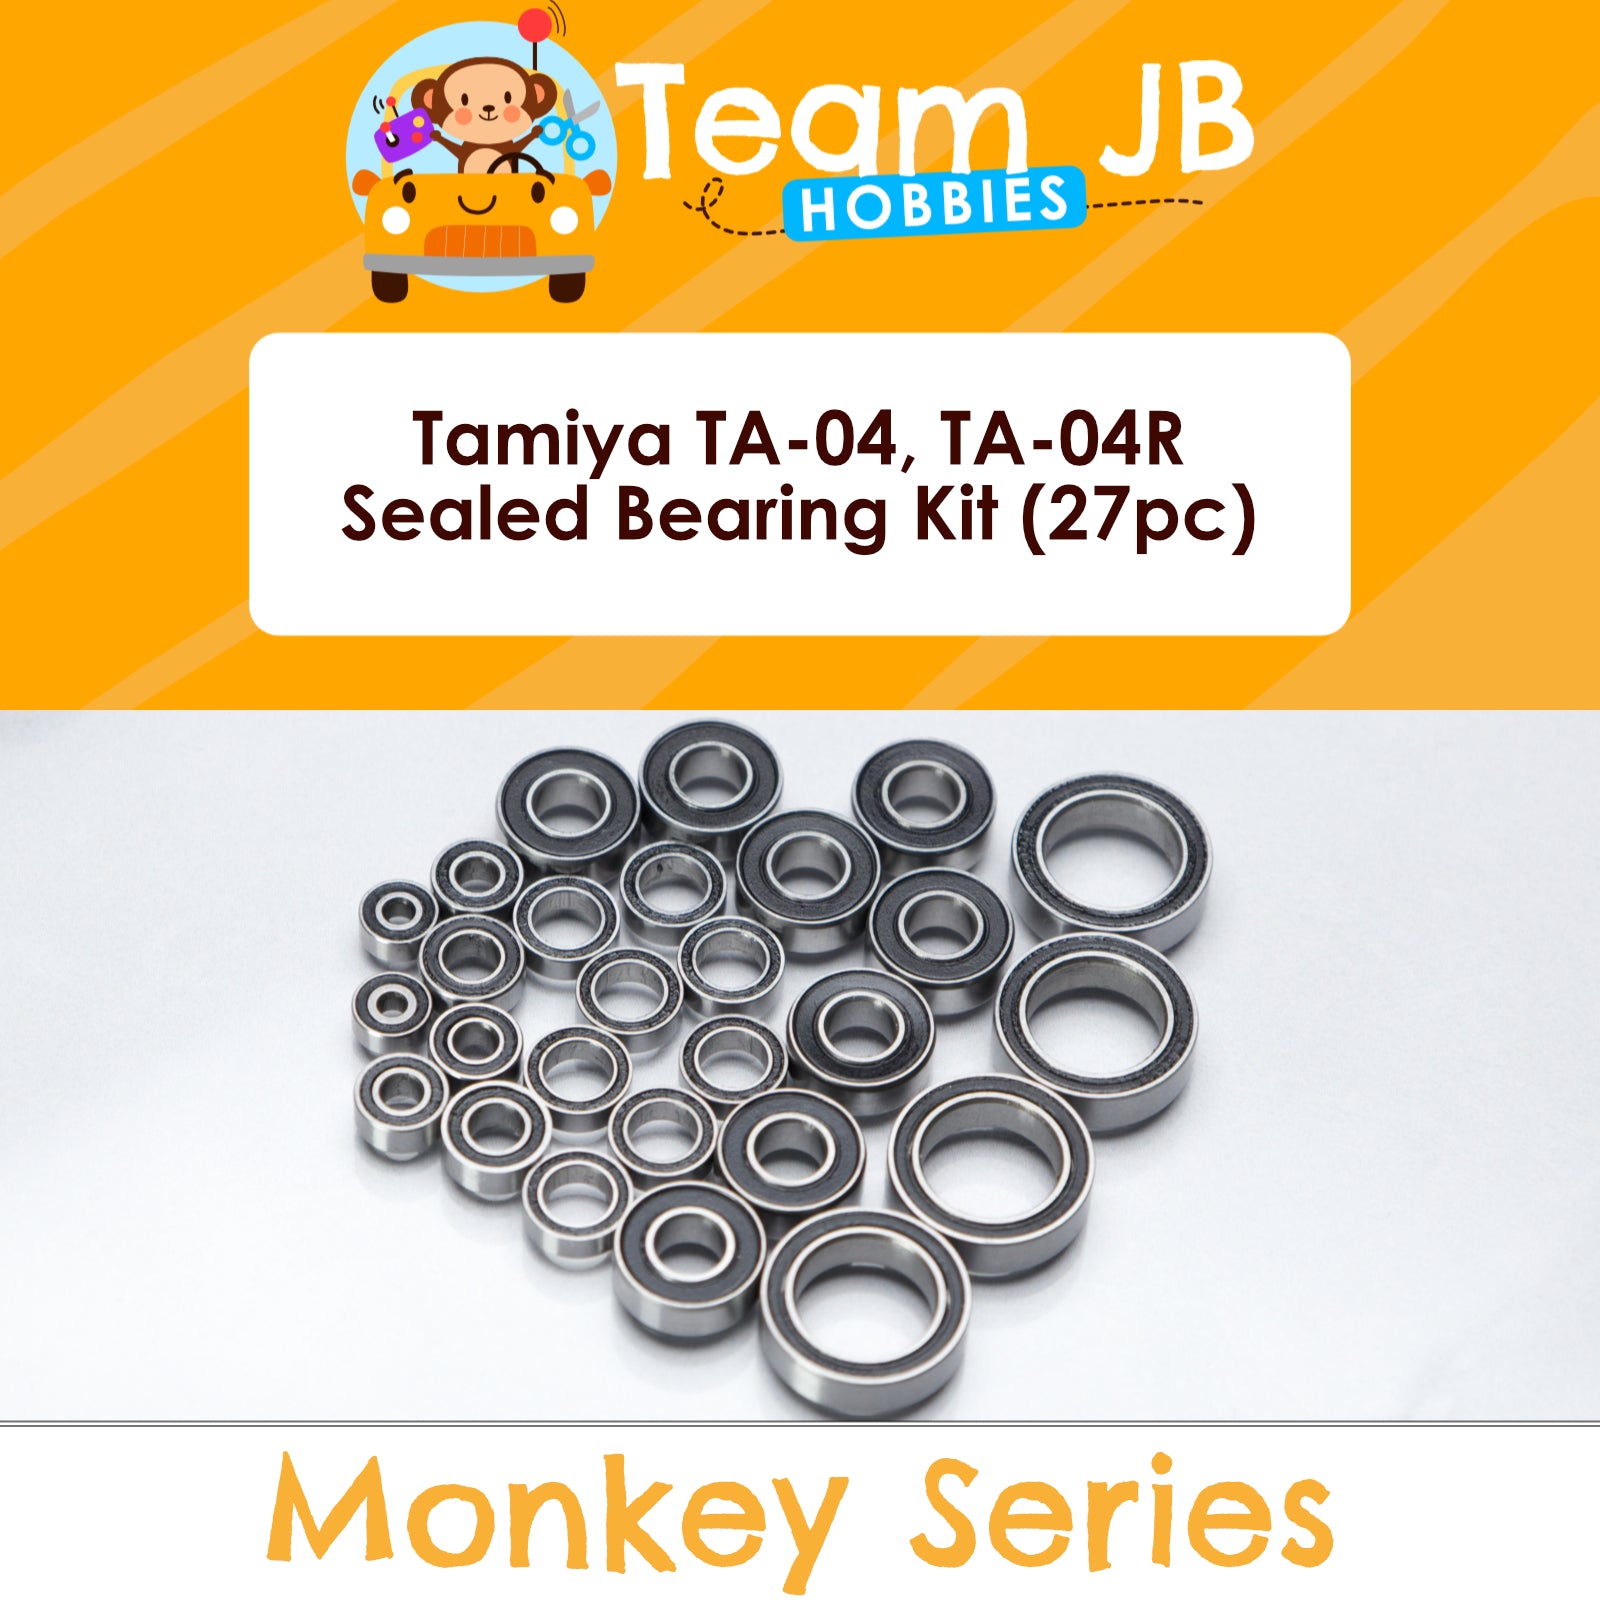 Tamiya TA-04, TA-04R - Sealed Bearing Kit